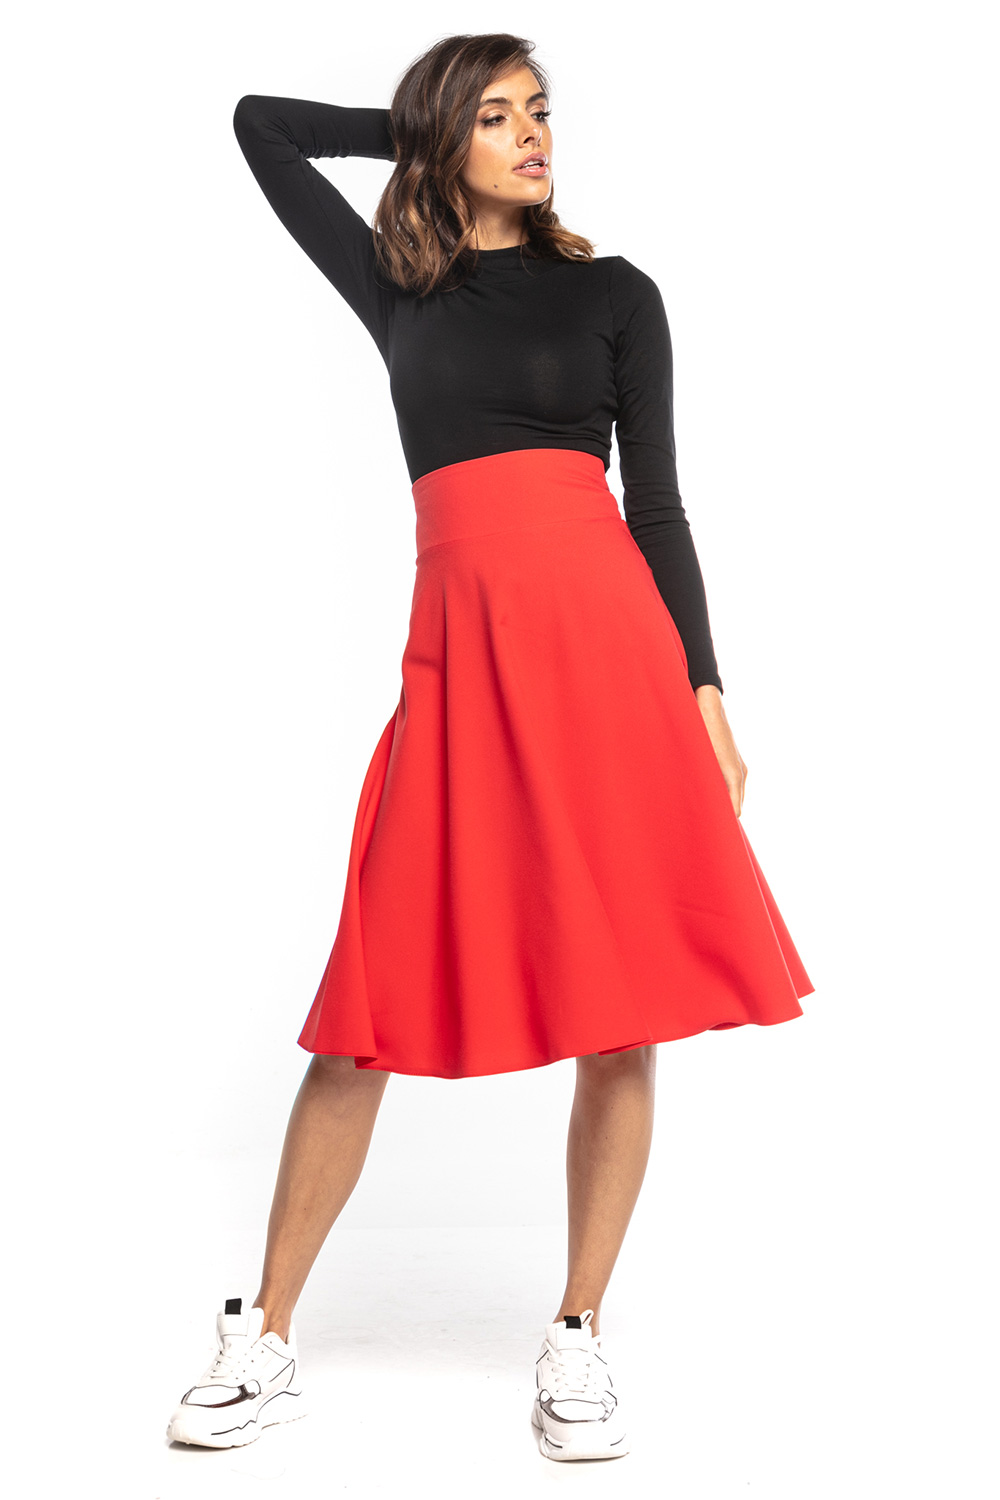  Skirt model 161865 Tessita  red